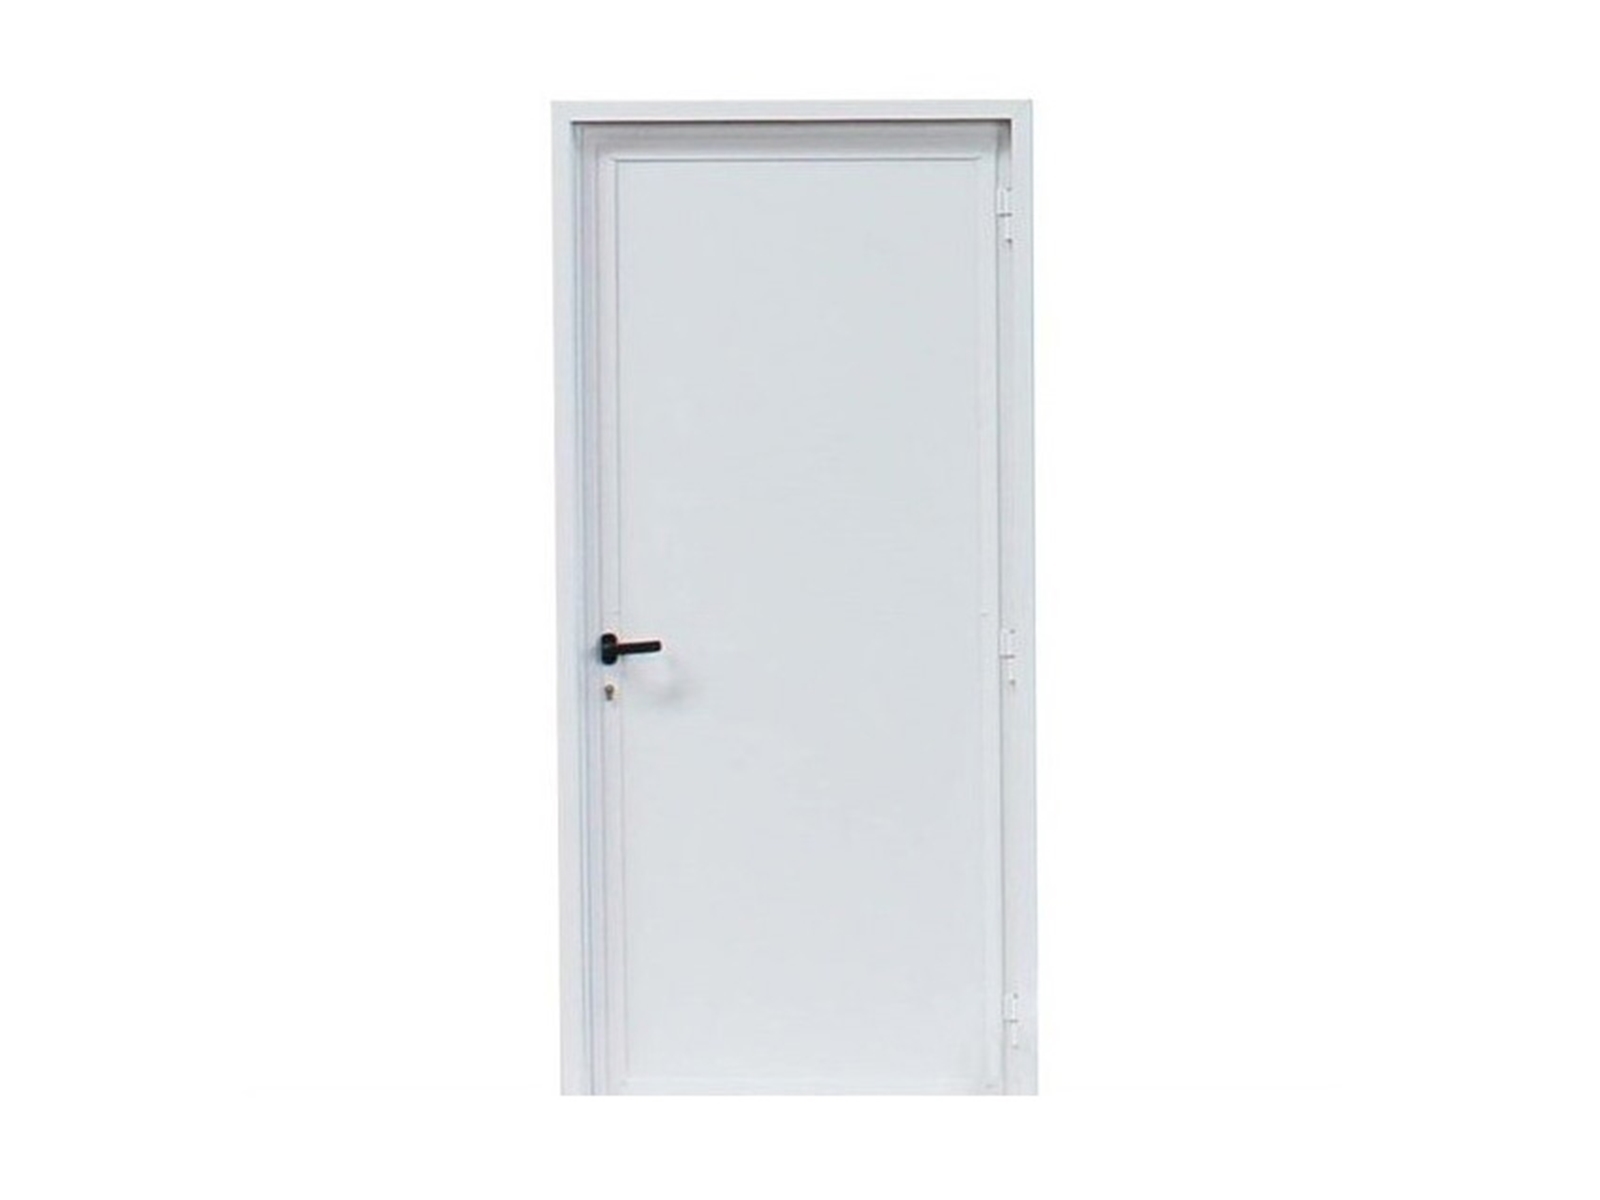 Aluminium loopdeur met kozijn, blind, DIN Links buitendraaiend, Wit, 2125x1000mm